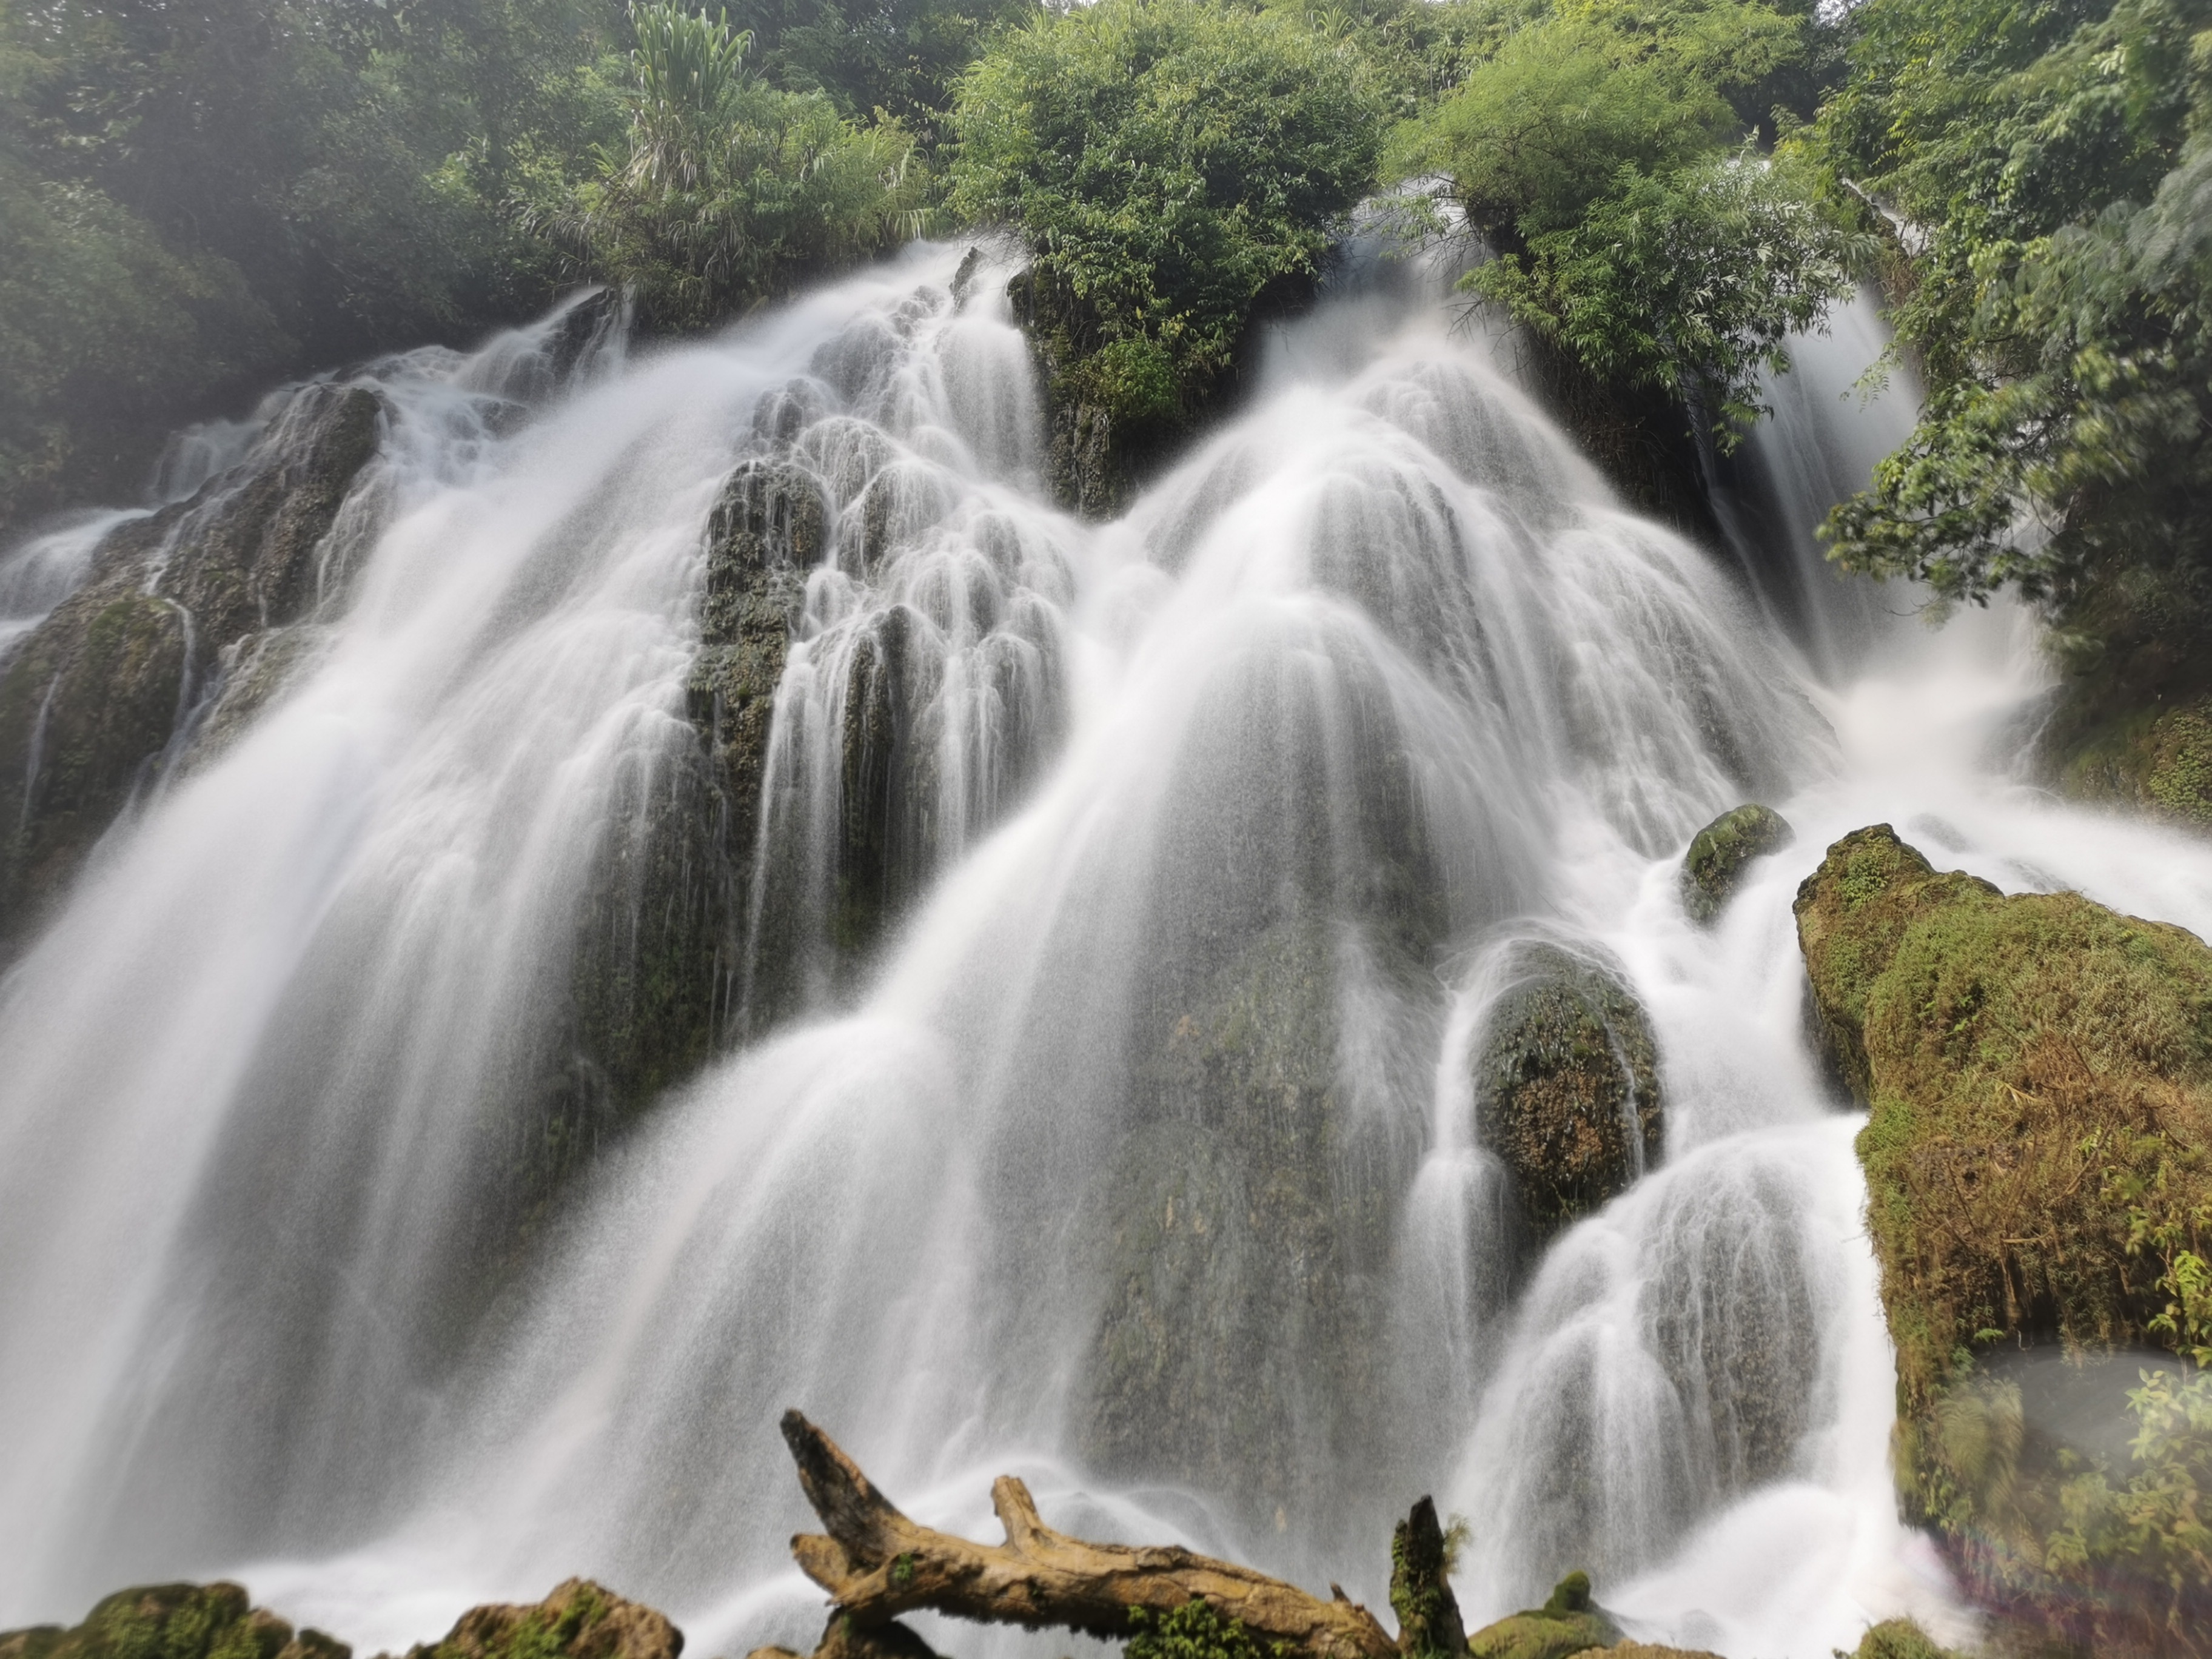 贵州省梵净山获准列入世界自然遗产名录 中国世界遗产增至53项 - 中国日报网